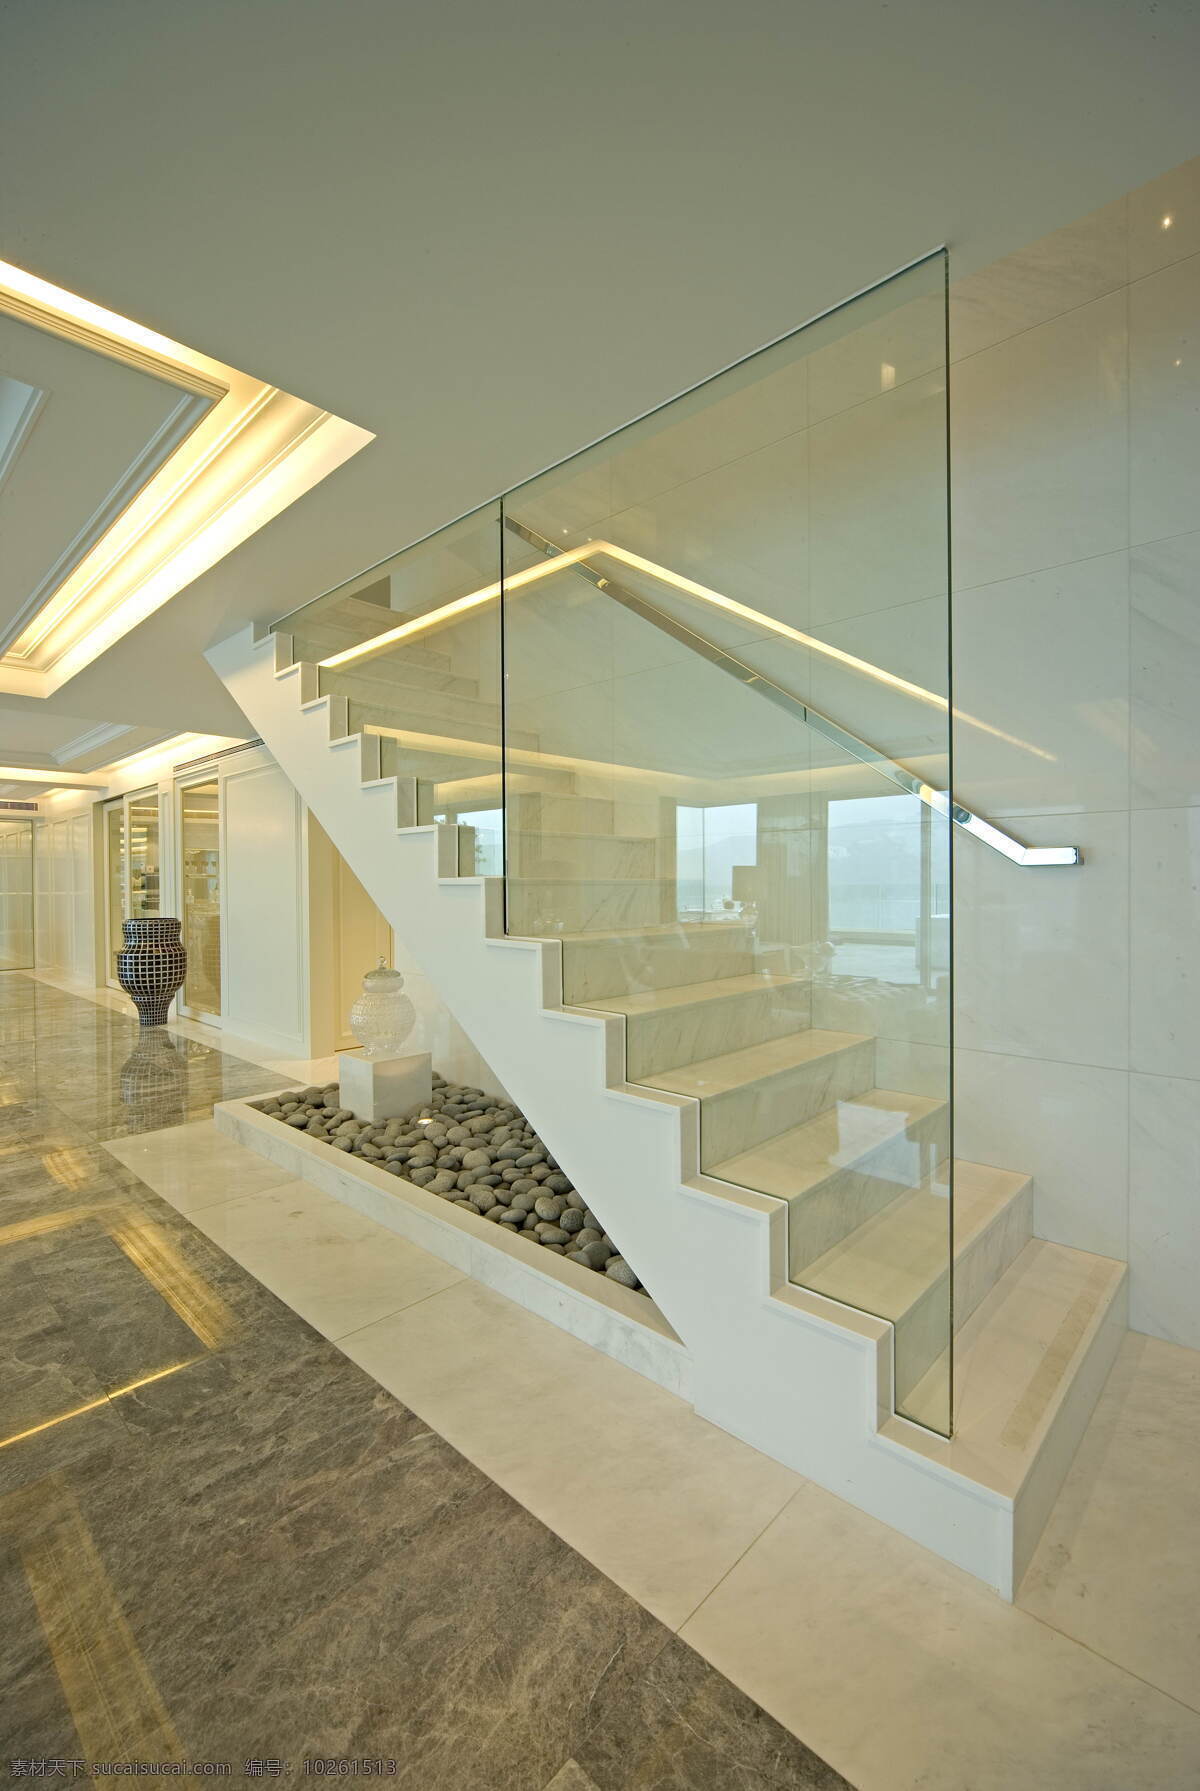 简约 时尚 楼梯 设计图 家居 家居生活 室内设计 装修 室内 家具 装修设计 环境设计